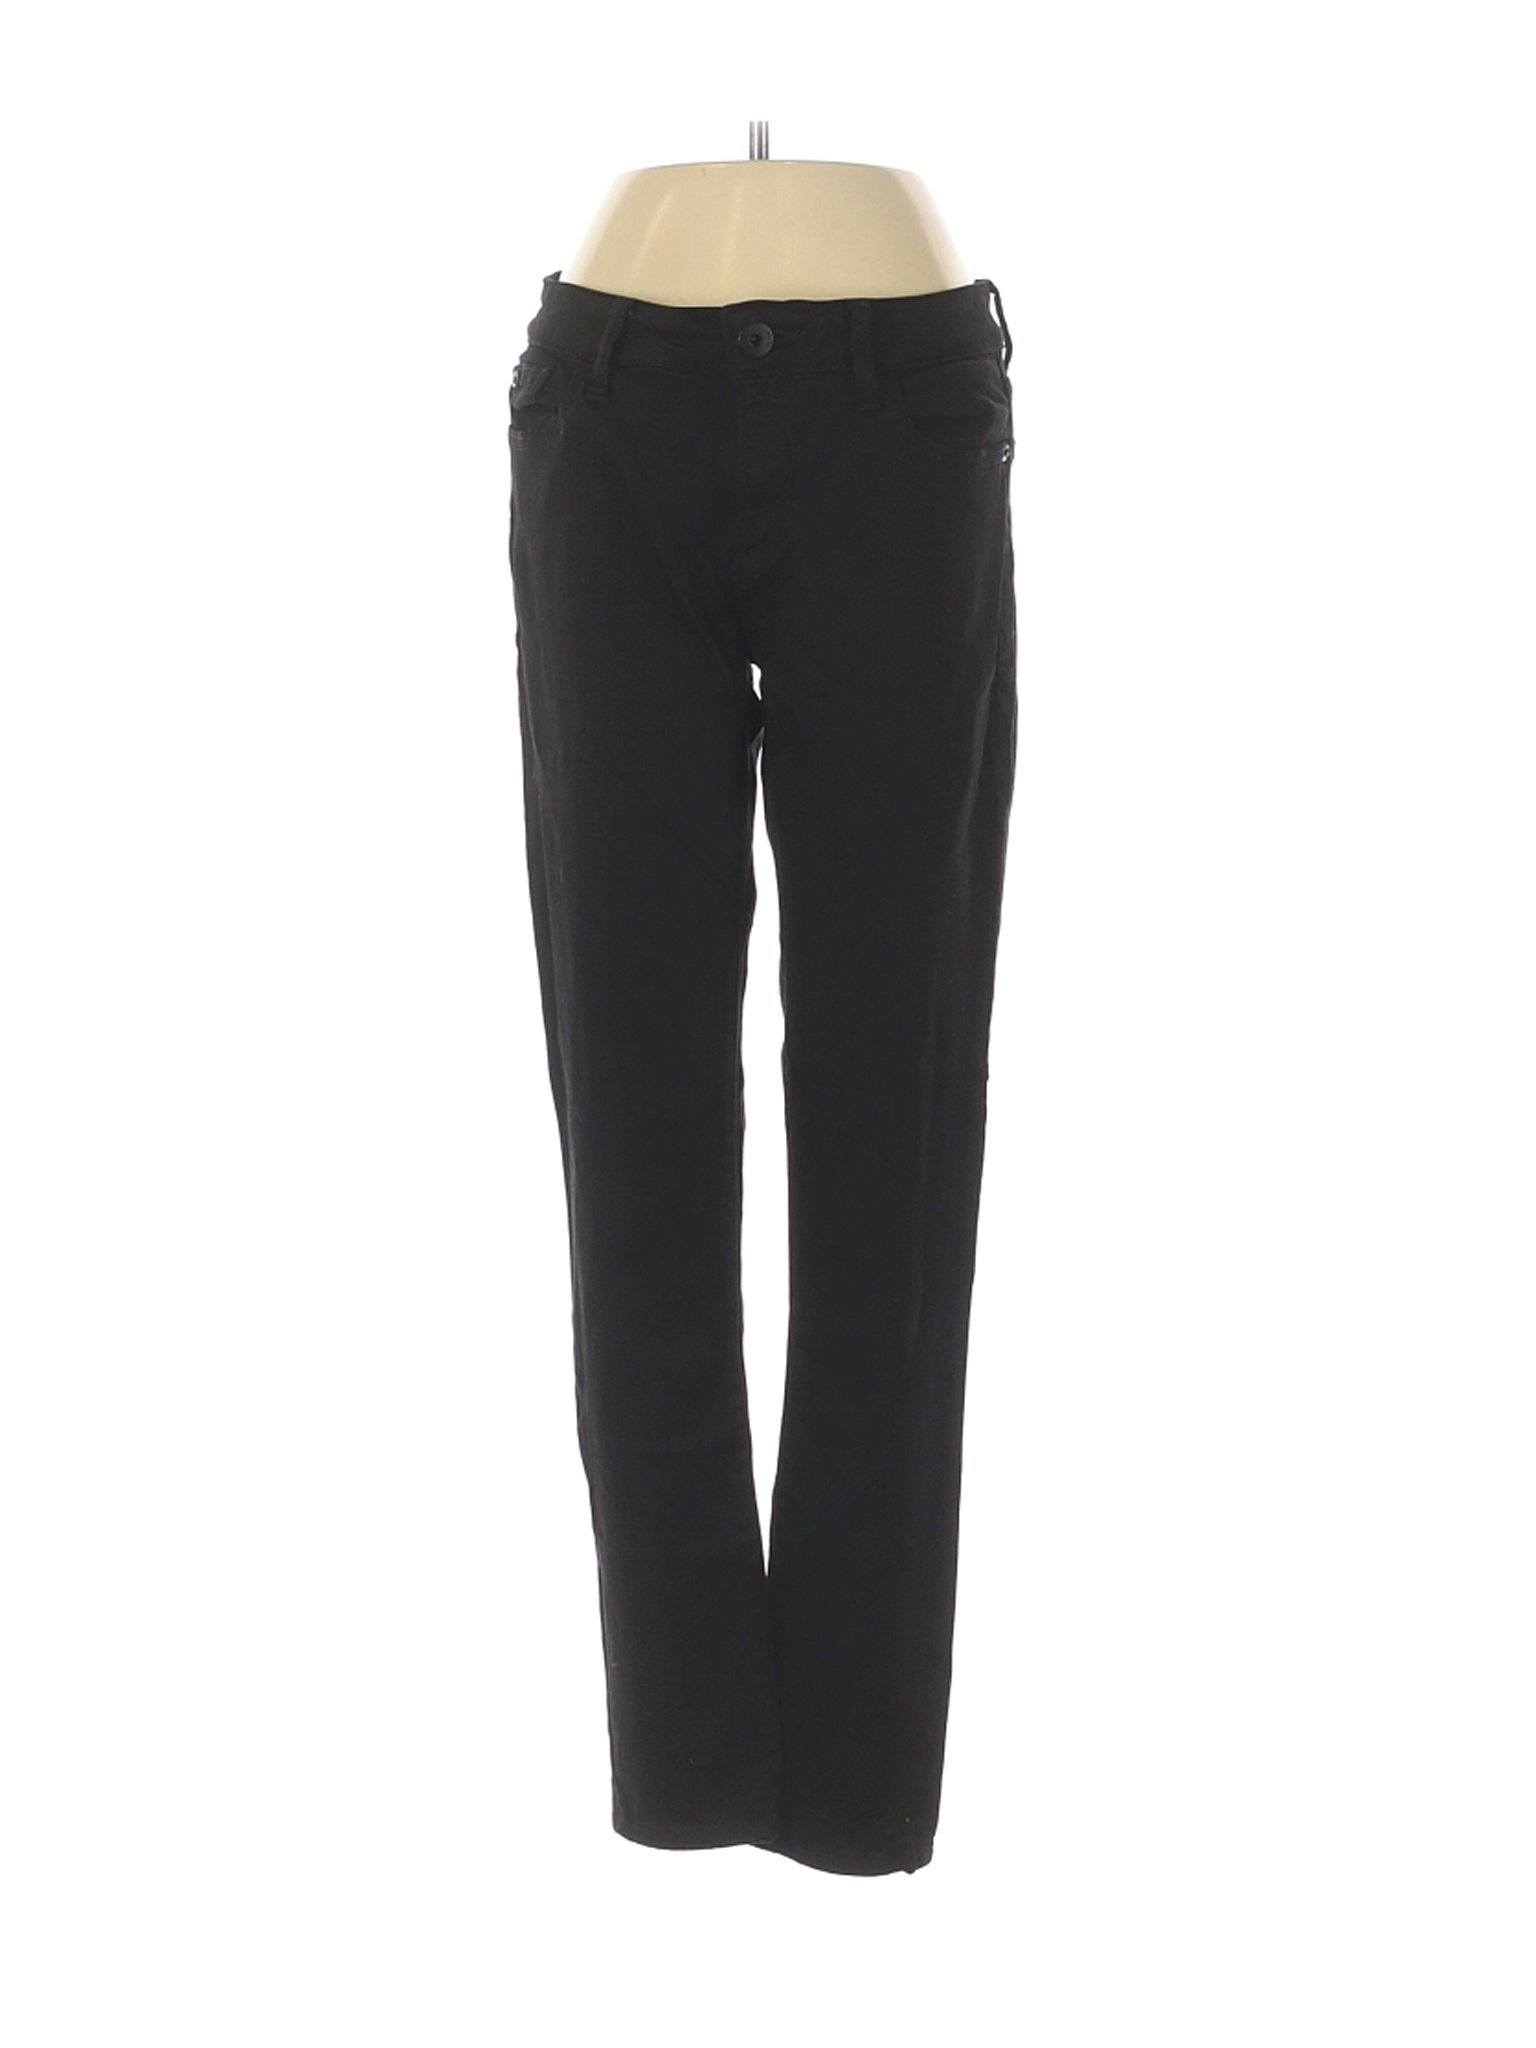 DL1961 Women Black Jeans 27W | eBay